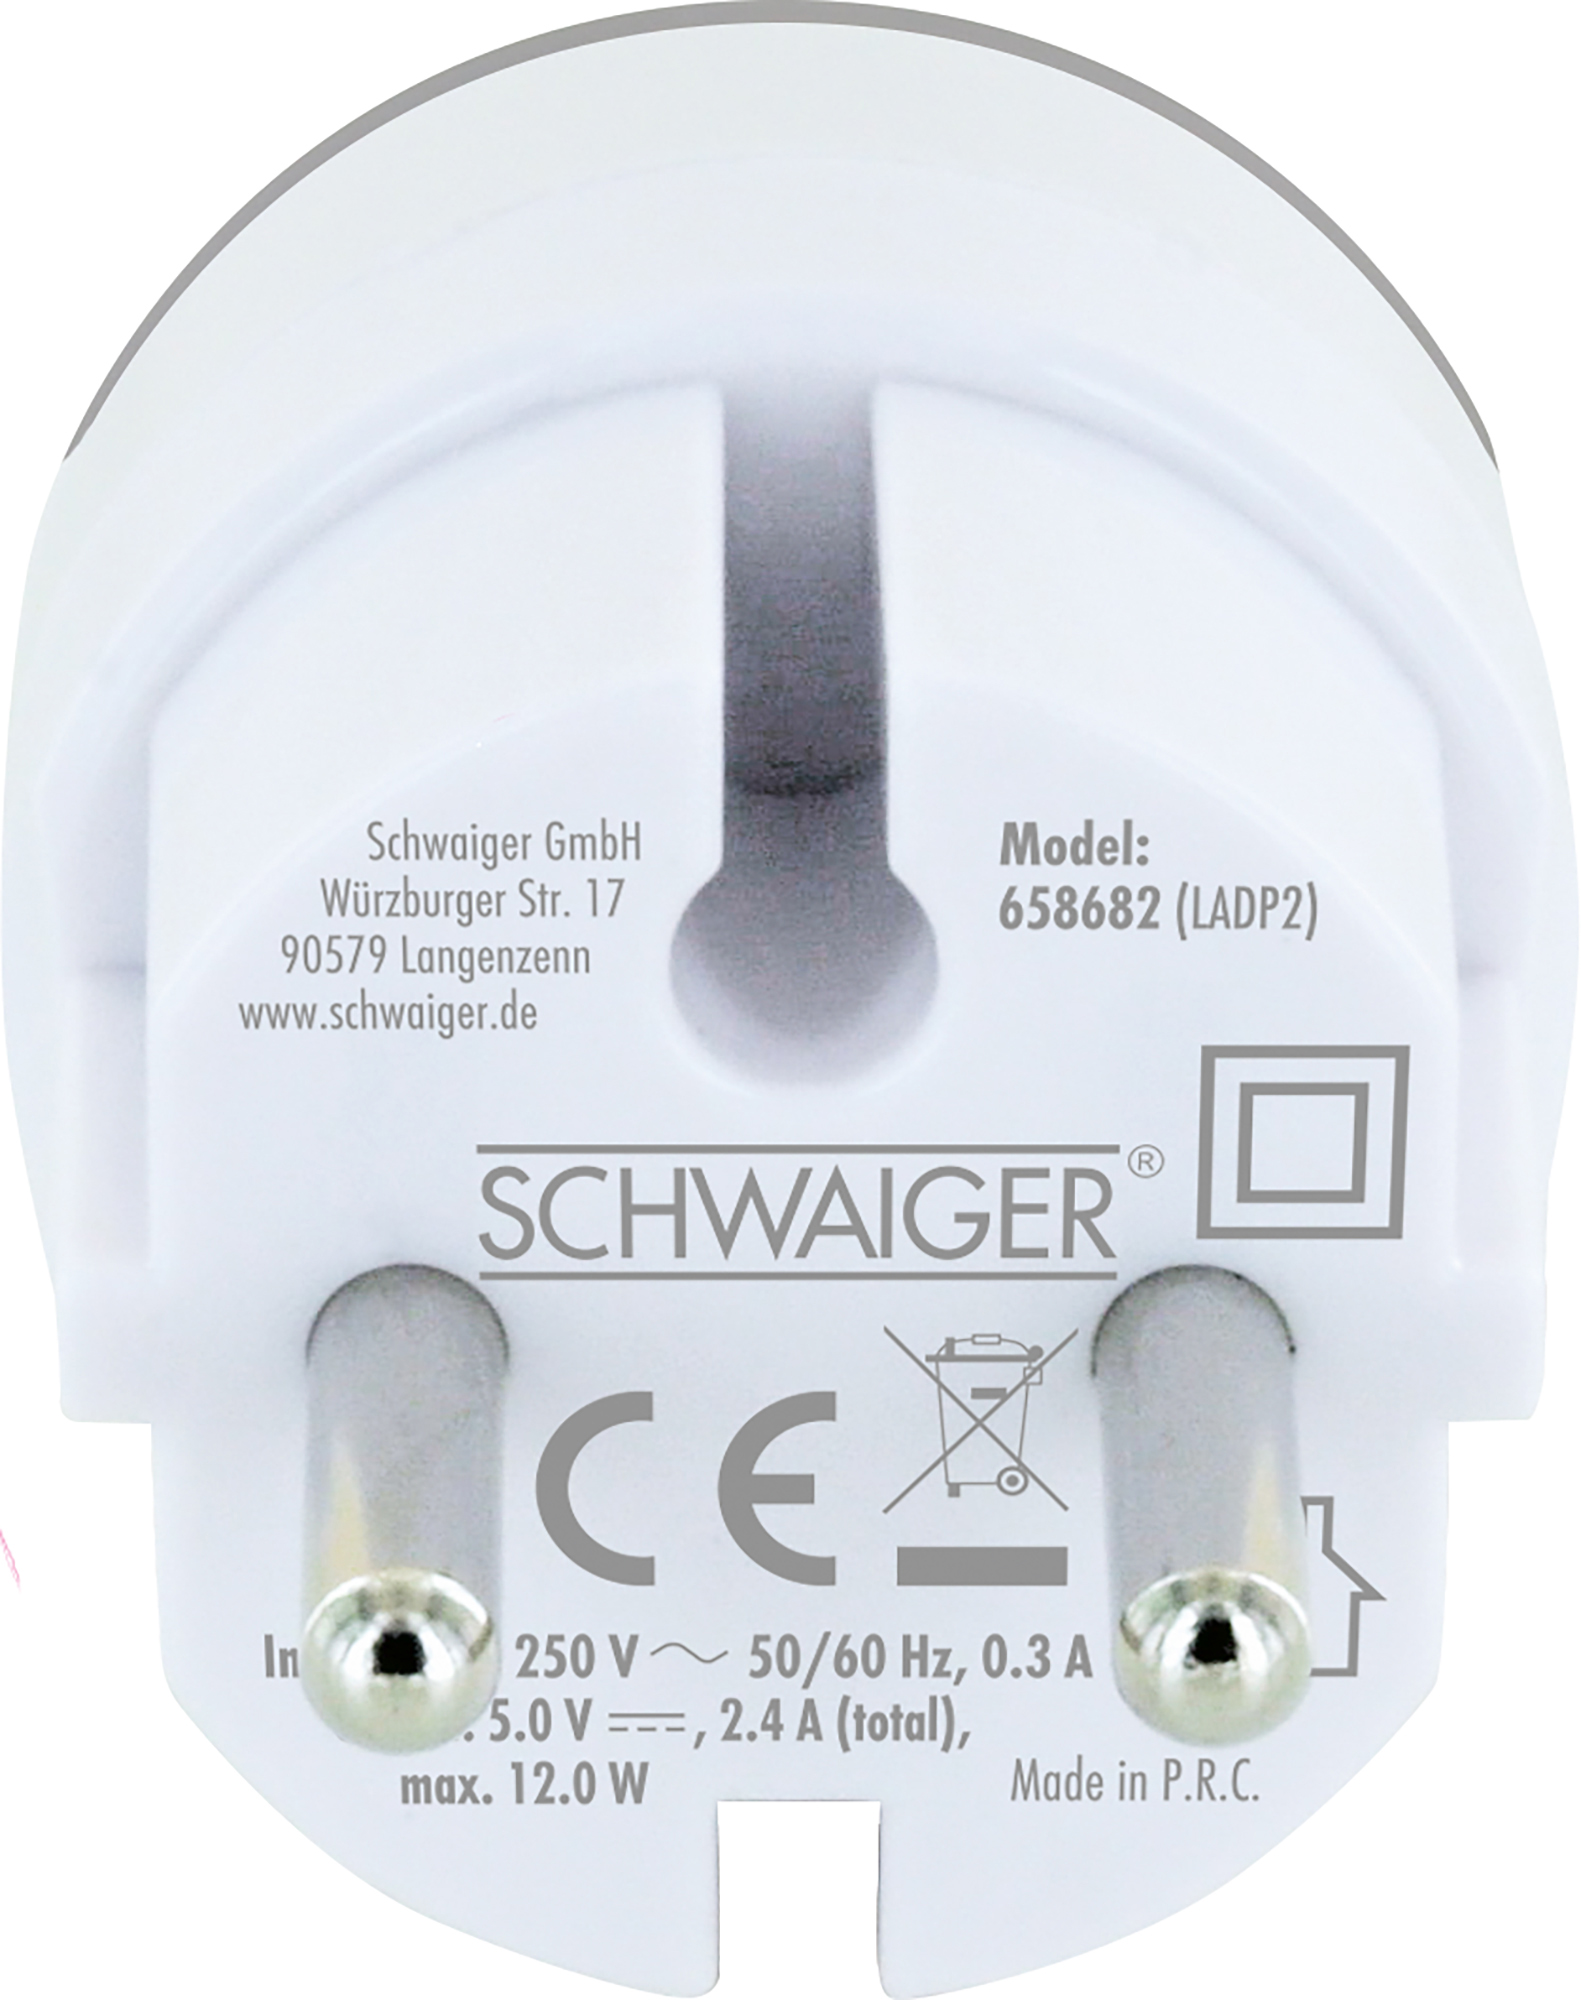 SCHWAIGER Ladeadapter -658682-